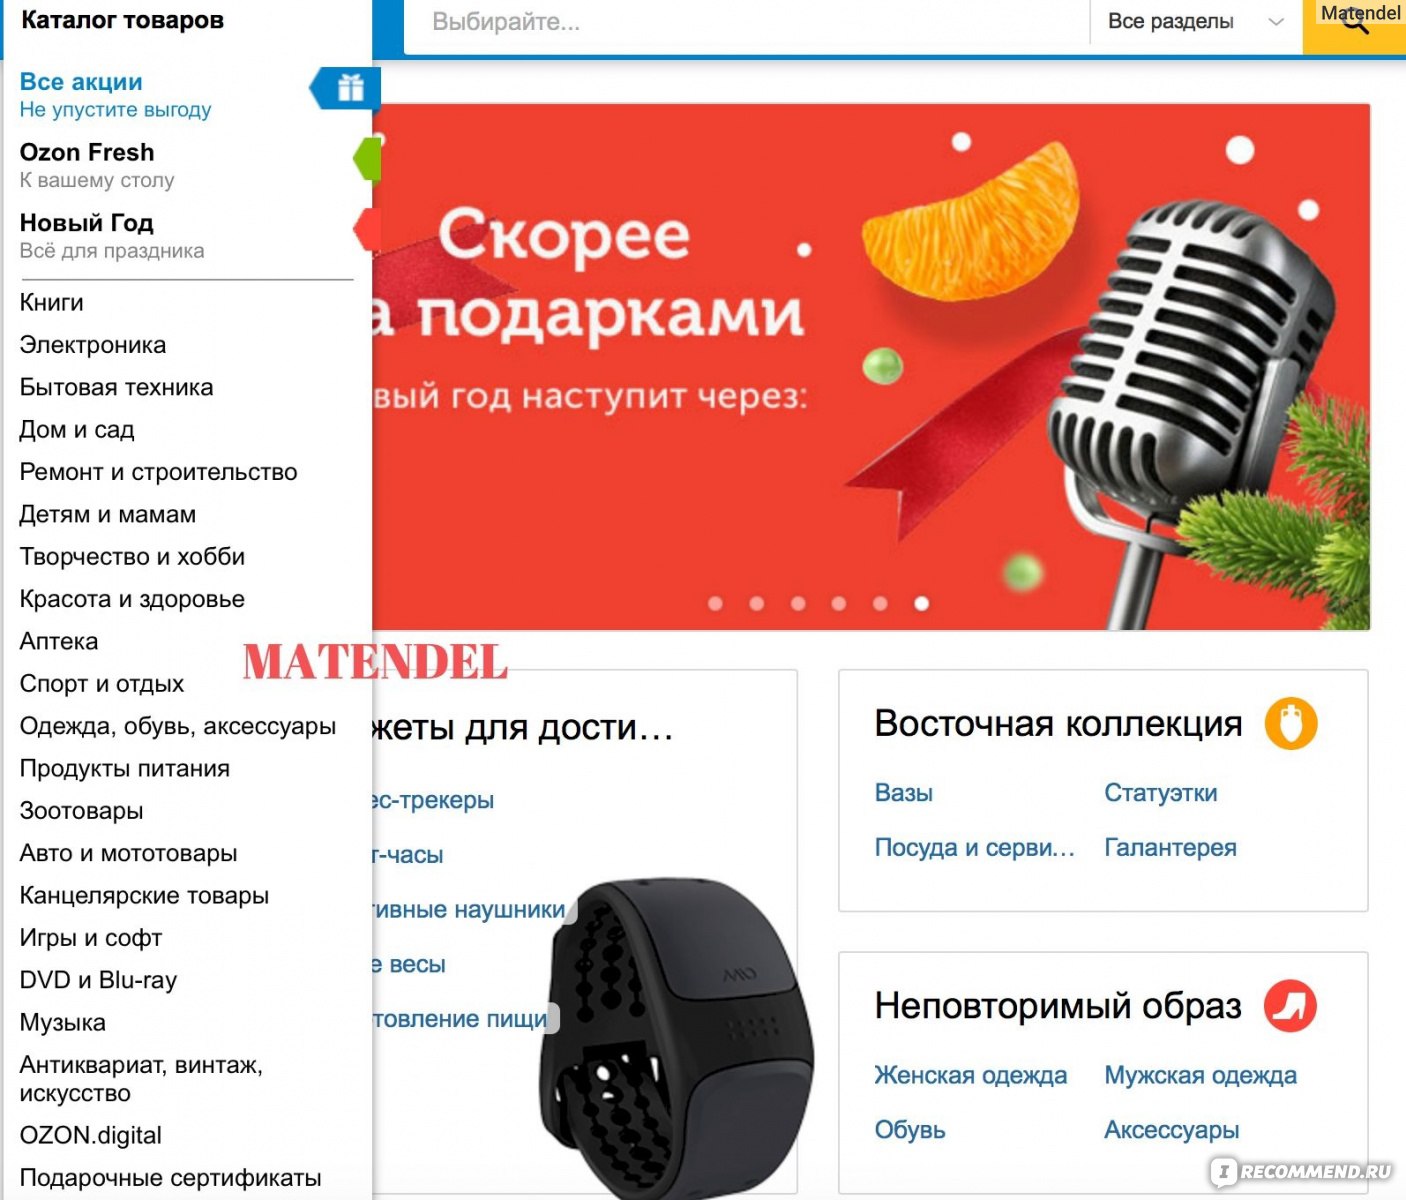 Ozon Ru Интернет Магазин Каталог Товаров Тула